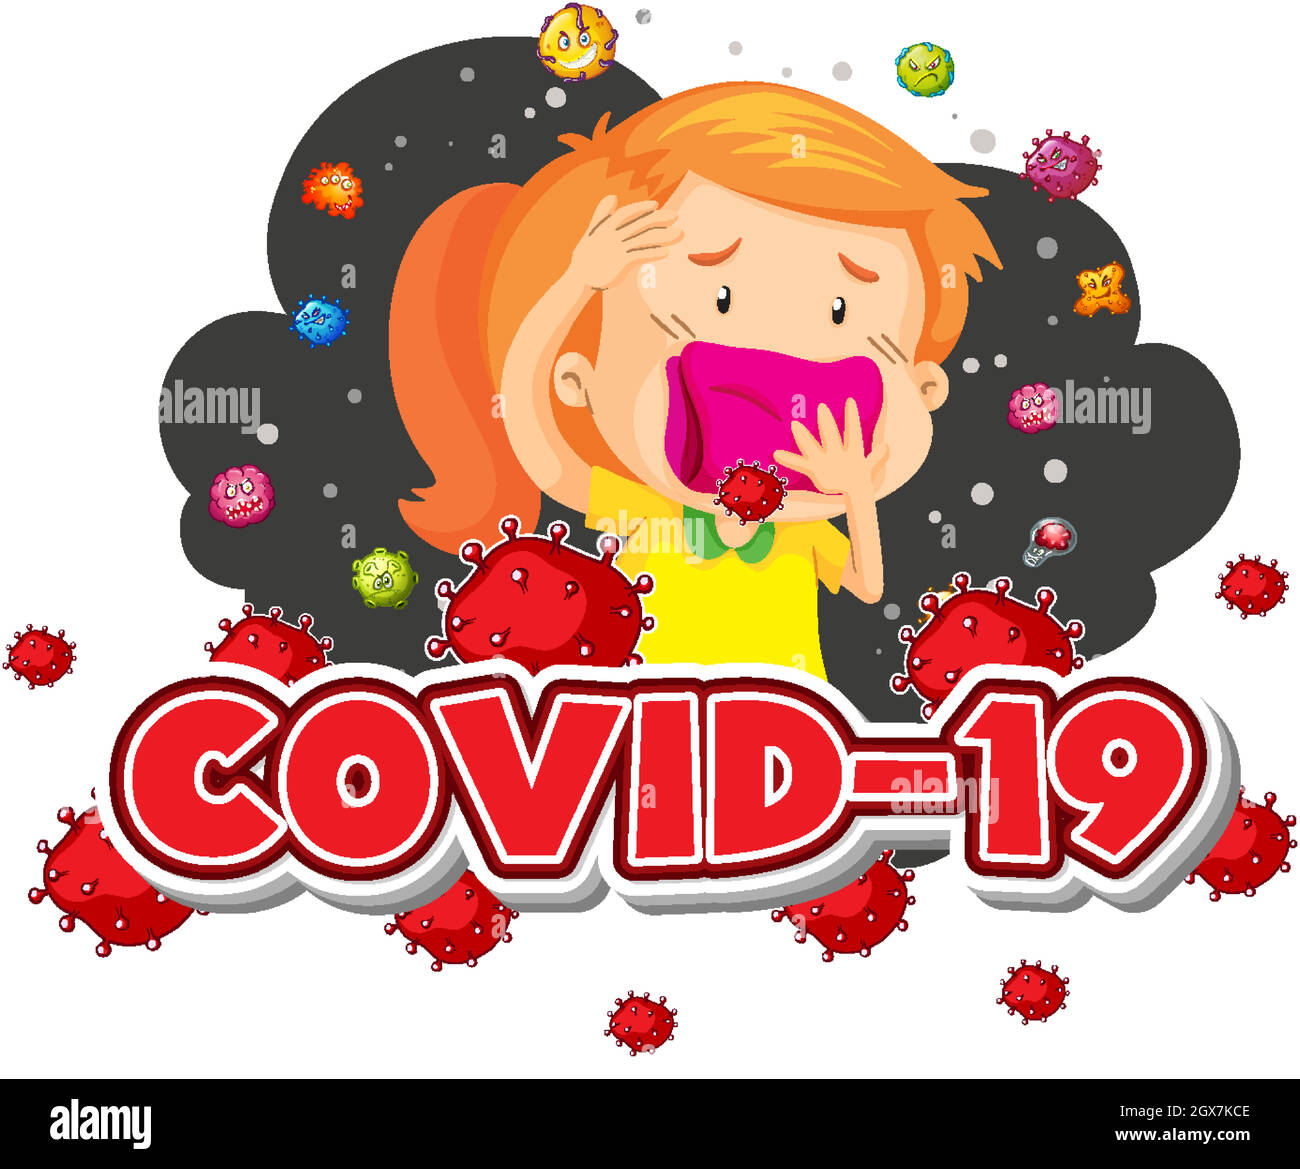 Covid 19 Zeichen Vorlage Mädchen und viele Viren im Hintergrund Stock Vektor